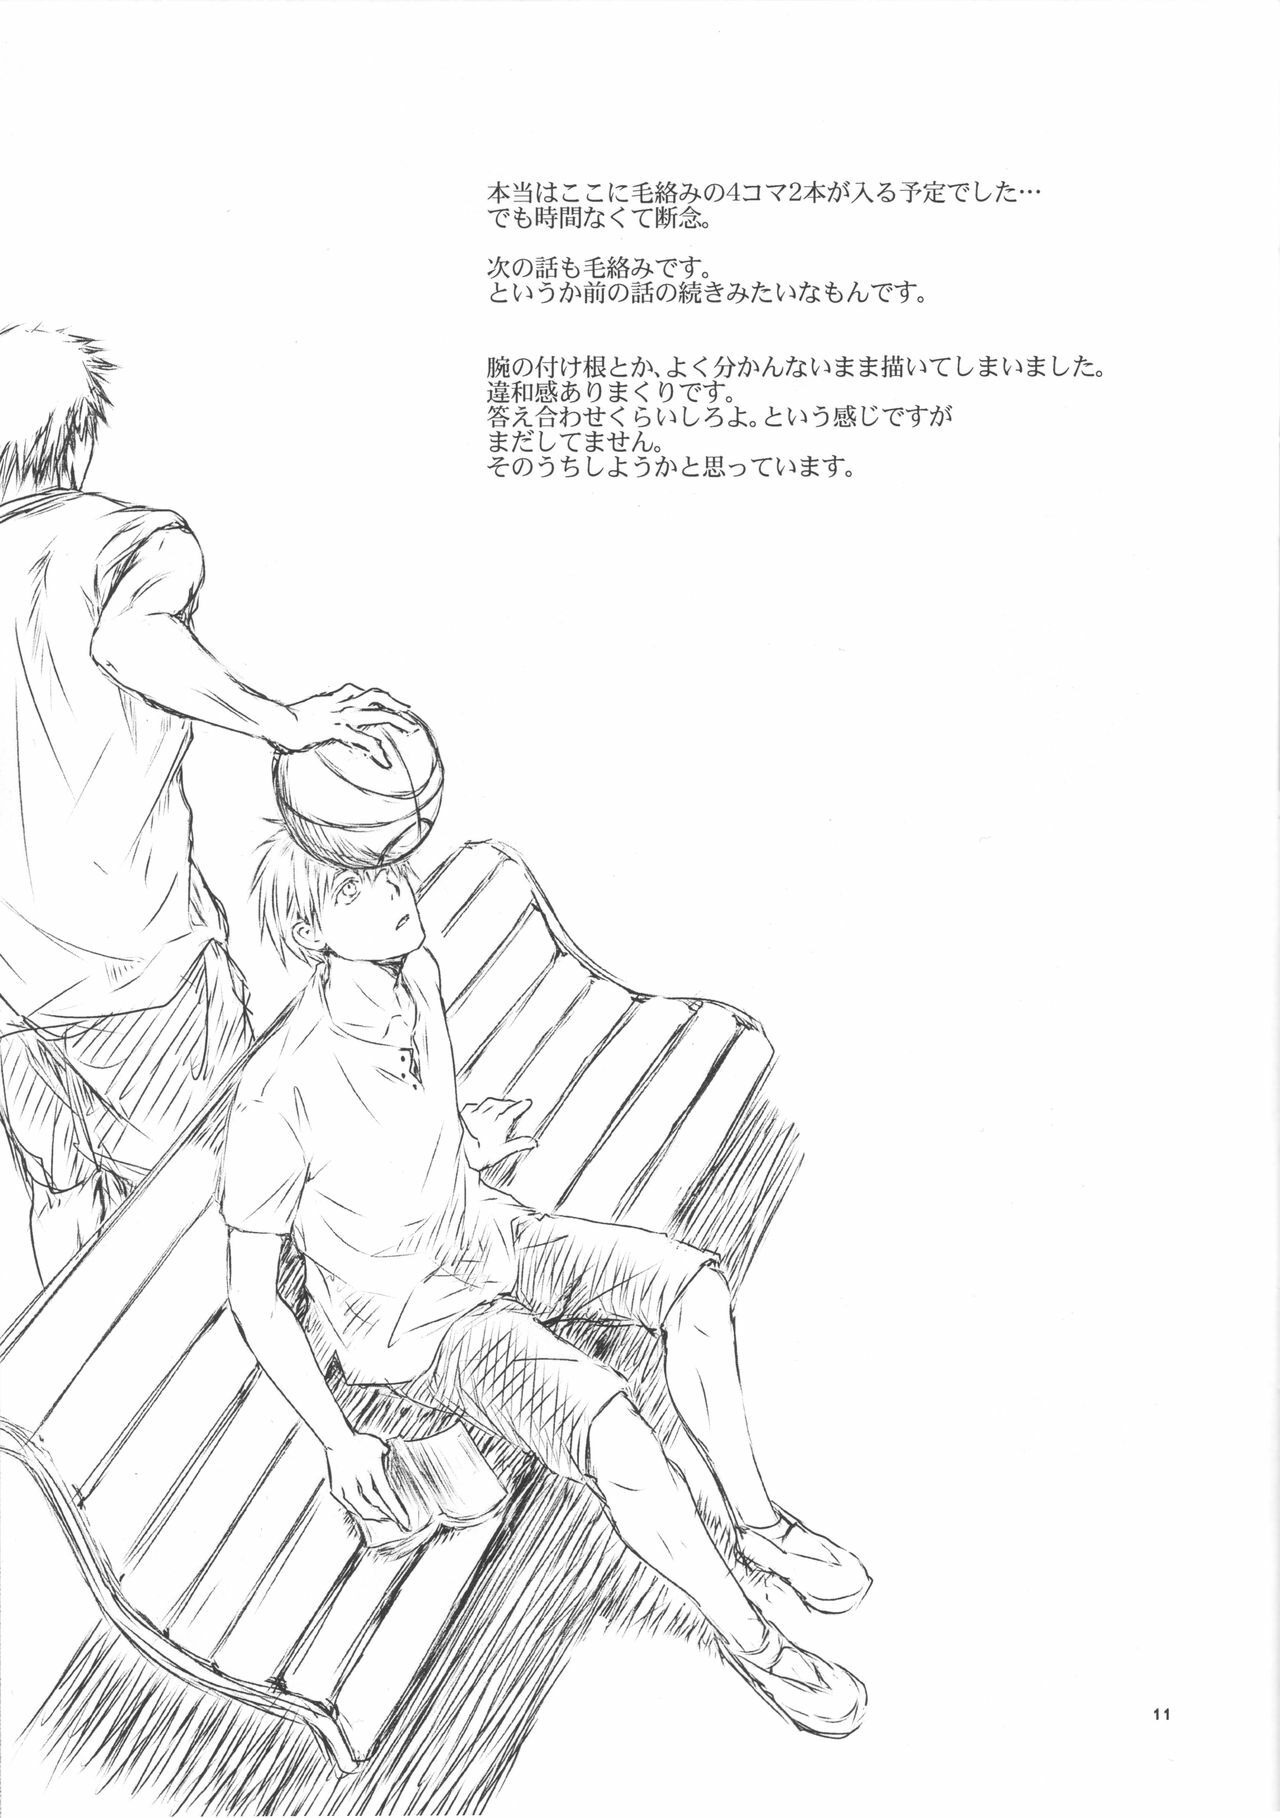 (Shadow Trickster 2) [ViViaN (JiN)] VIOLATION→FOULS (Kuroko no Basuke) page 11 full